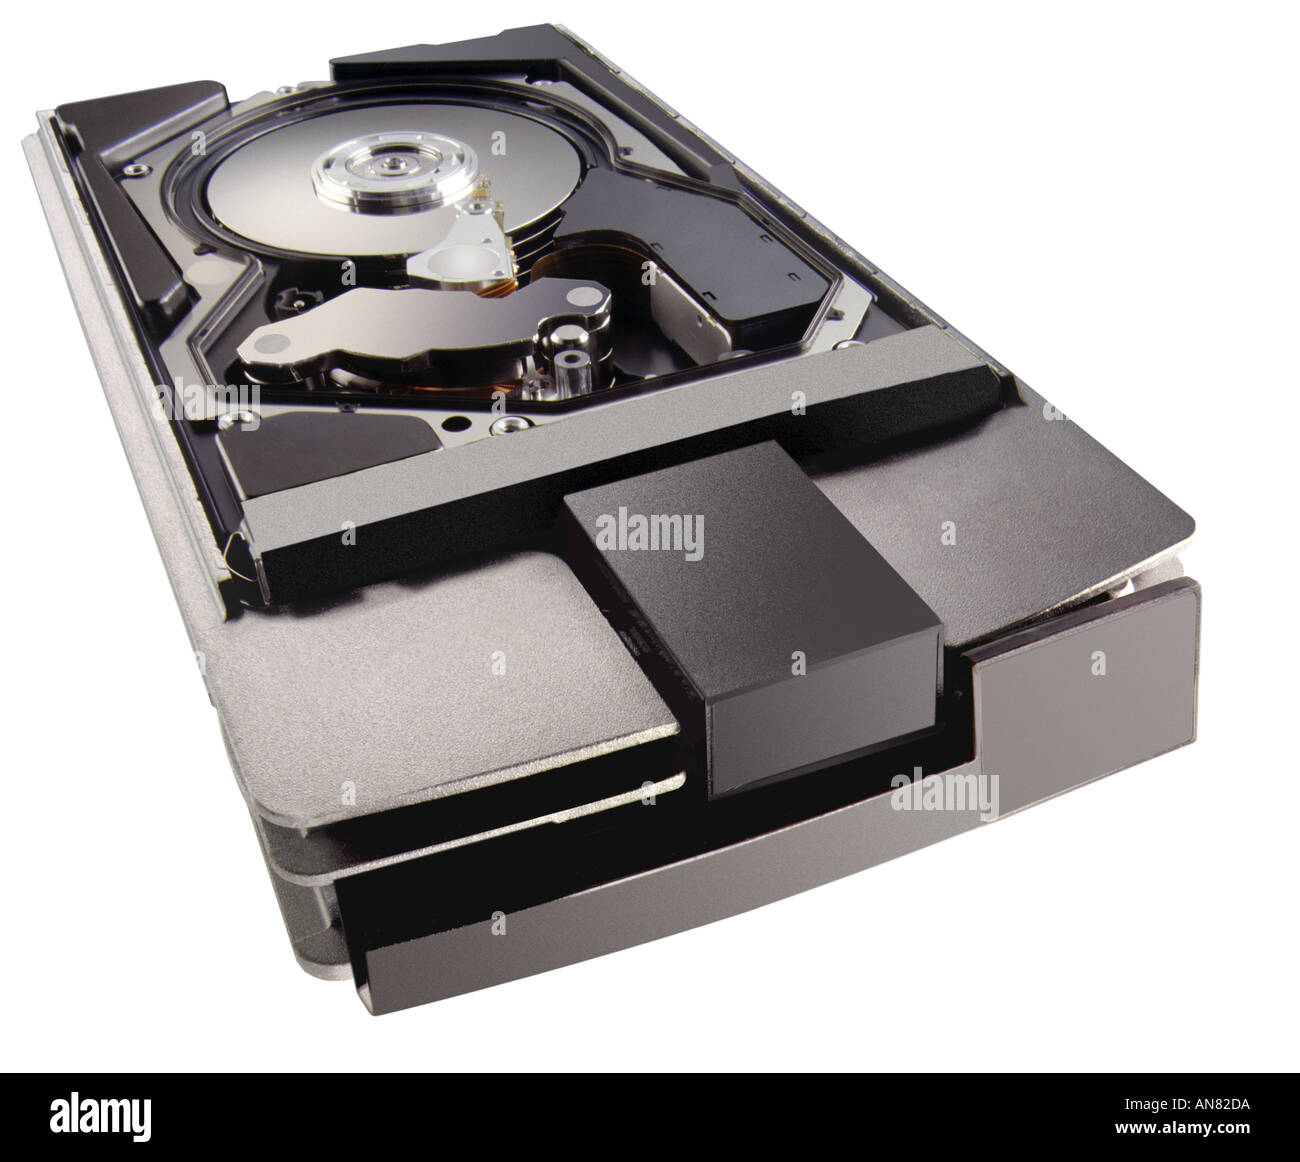 disque dur de l'ordinateur sur fond blanc disque scsi remplaçable à chaud Banque D'Images